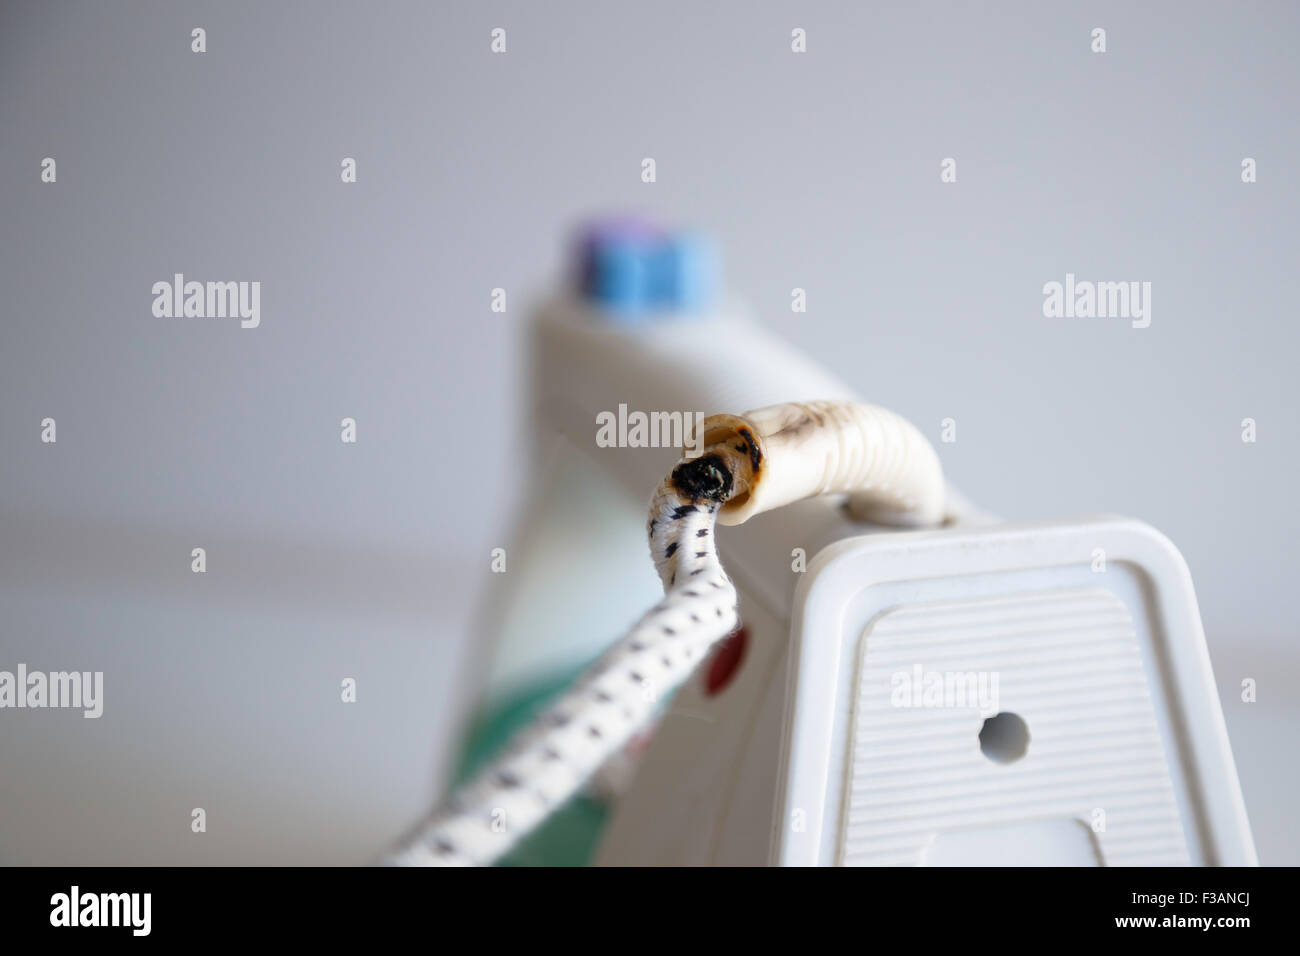 Corto circuito immagini e fotografie stock ad alta risoluzione - Alamy